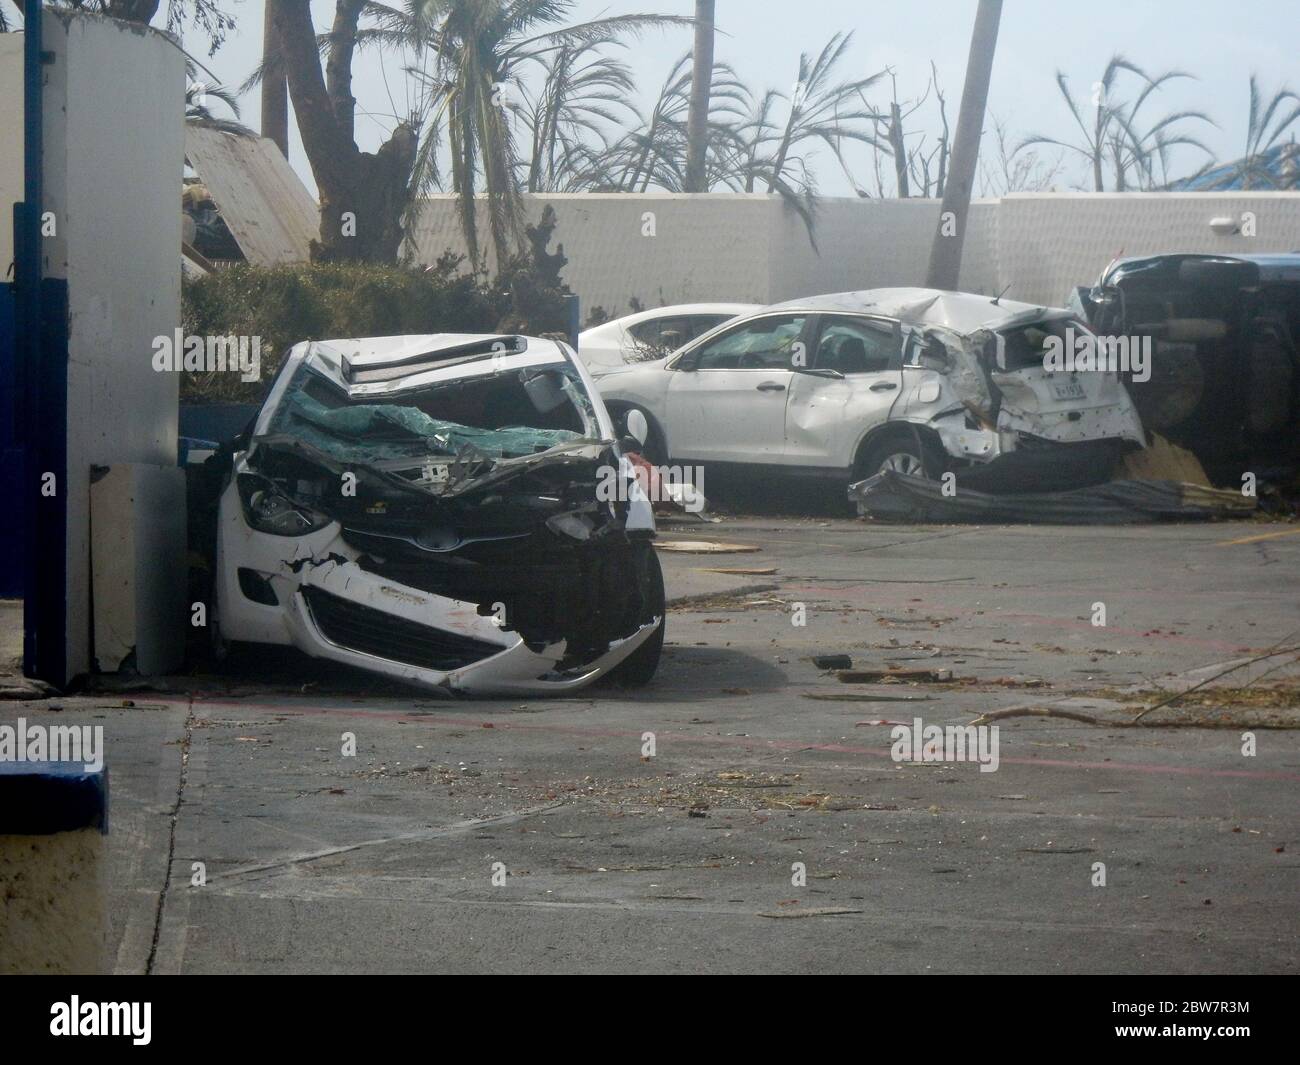 De nombreuses voitures ont été complètement détruites par le grand ouragan Irma sur l'île de Saint-Martin, dans les Caraïbes, en septembre 2017 Banque D'Images